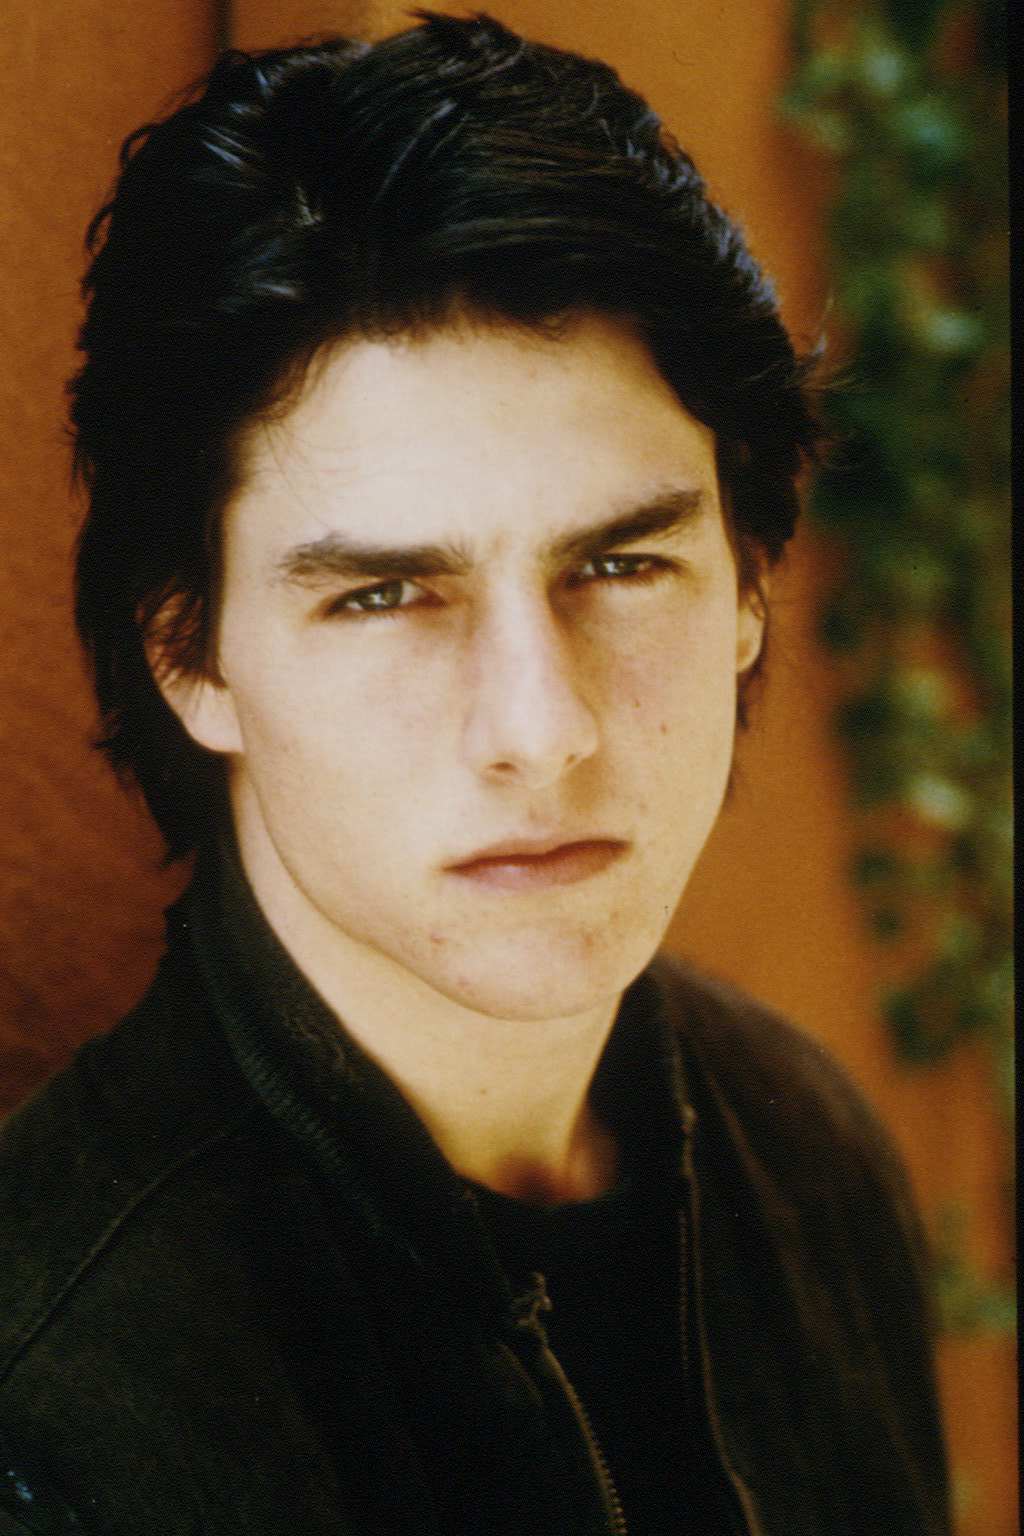 Ein undatiertes Bild von Tom Cruise | Quelle: Getty Images